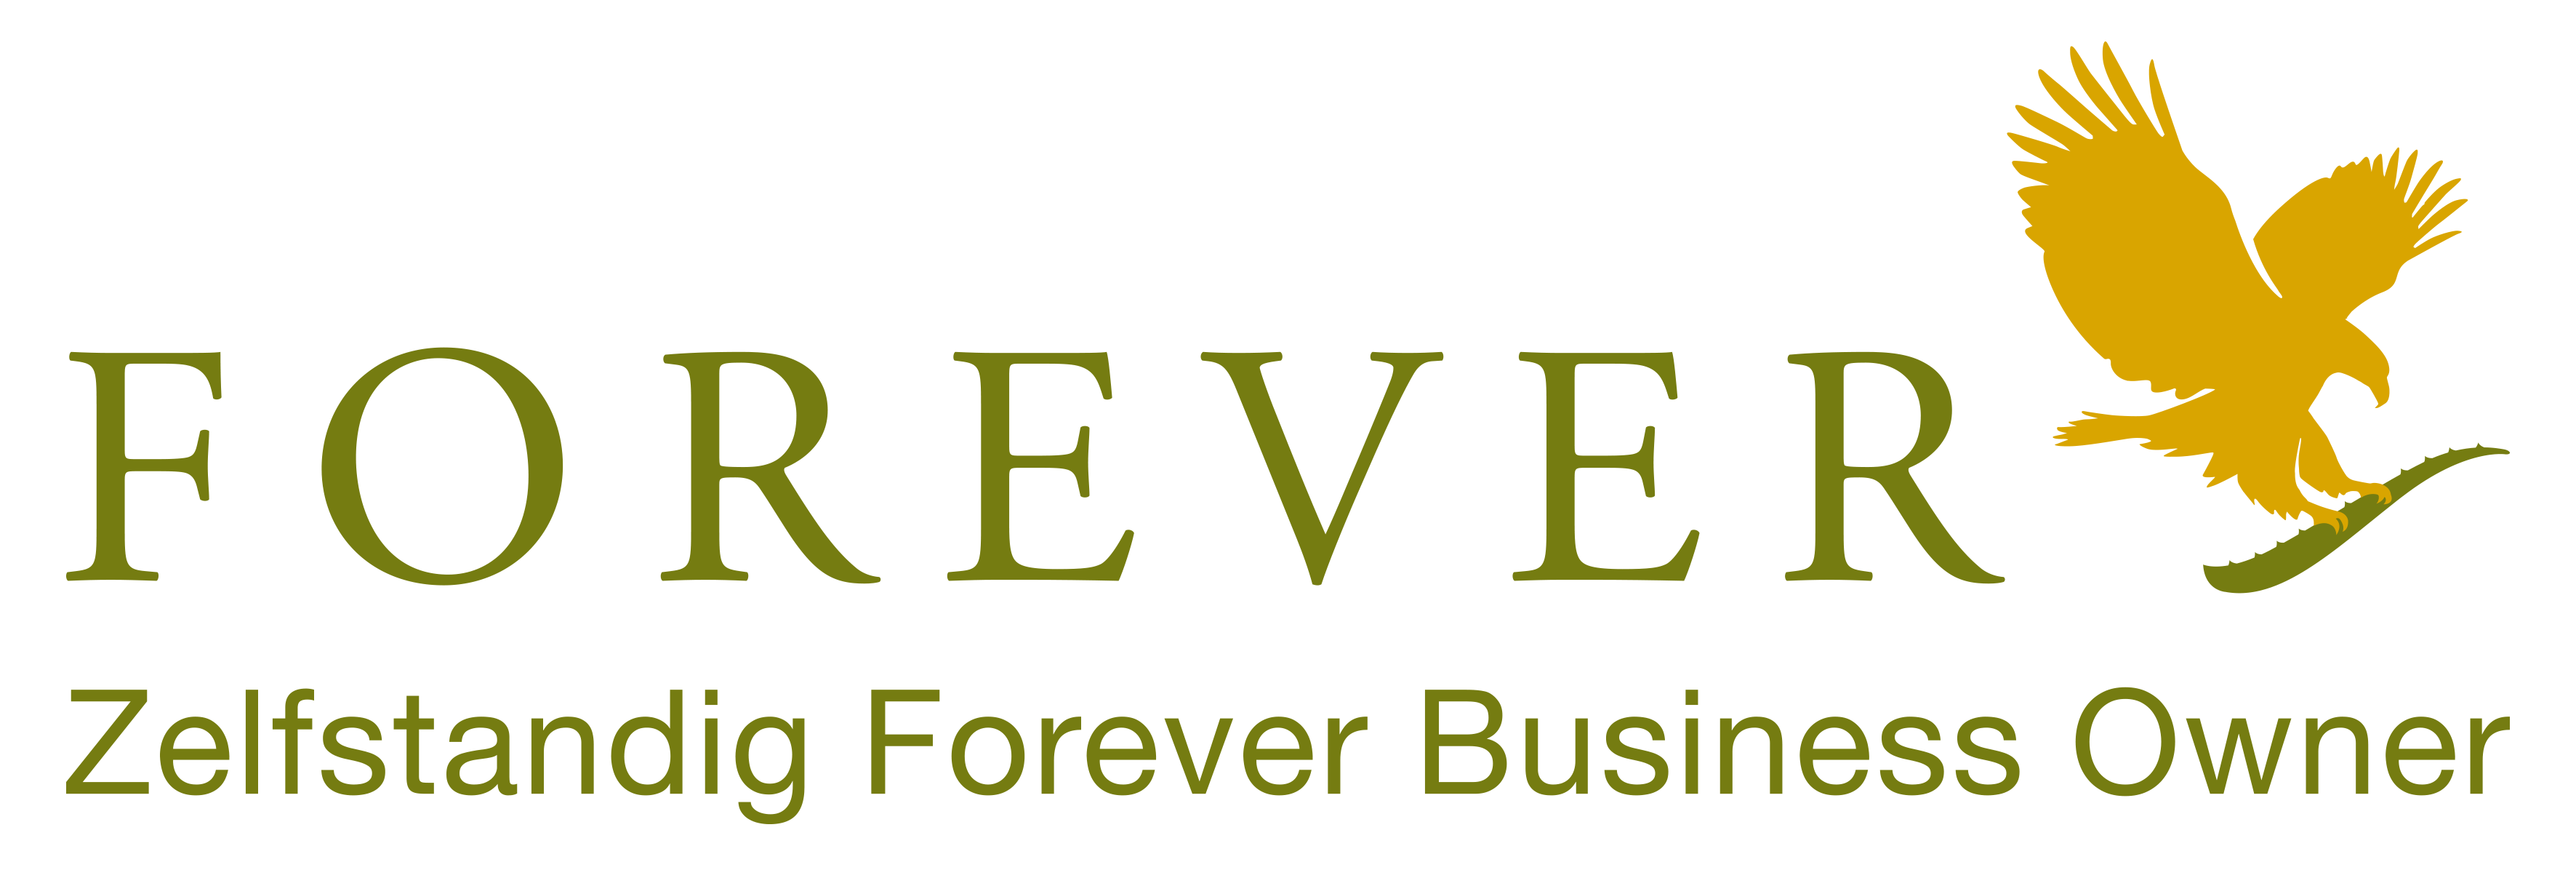 Forever Aloe vera fournit des produits Forever à des clients au Benelux et en France en tant que propriétaire d'une entreprise indépendante pour Forever Living. Achetez vos produits Forever Living en Belgique, aux Pays-Bas, au Luxembourg et en France.